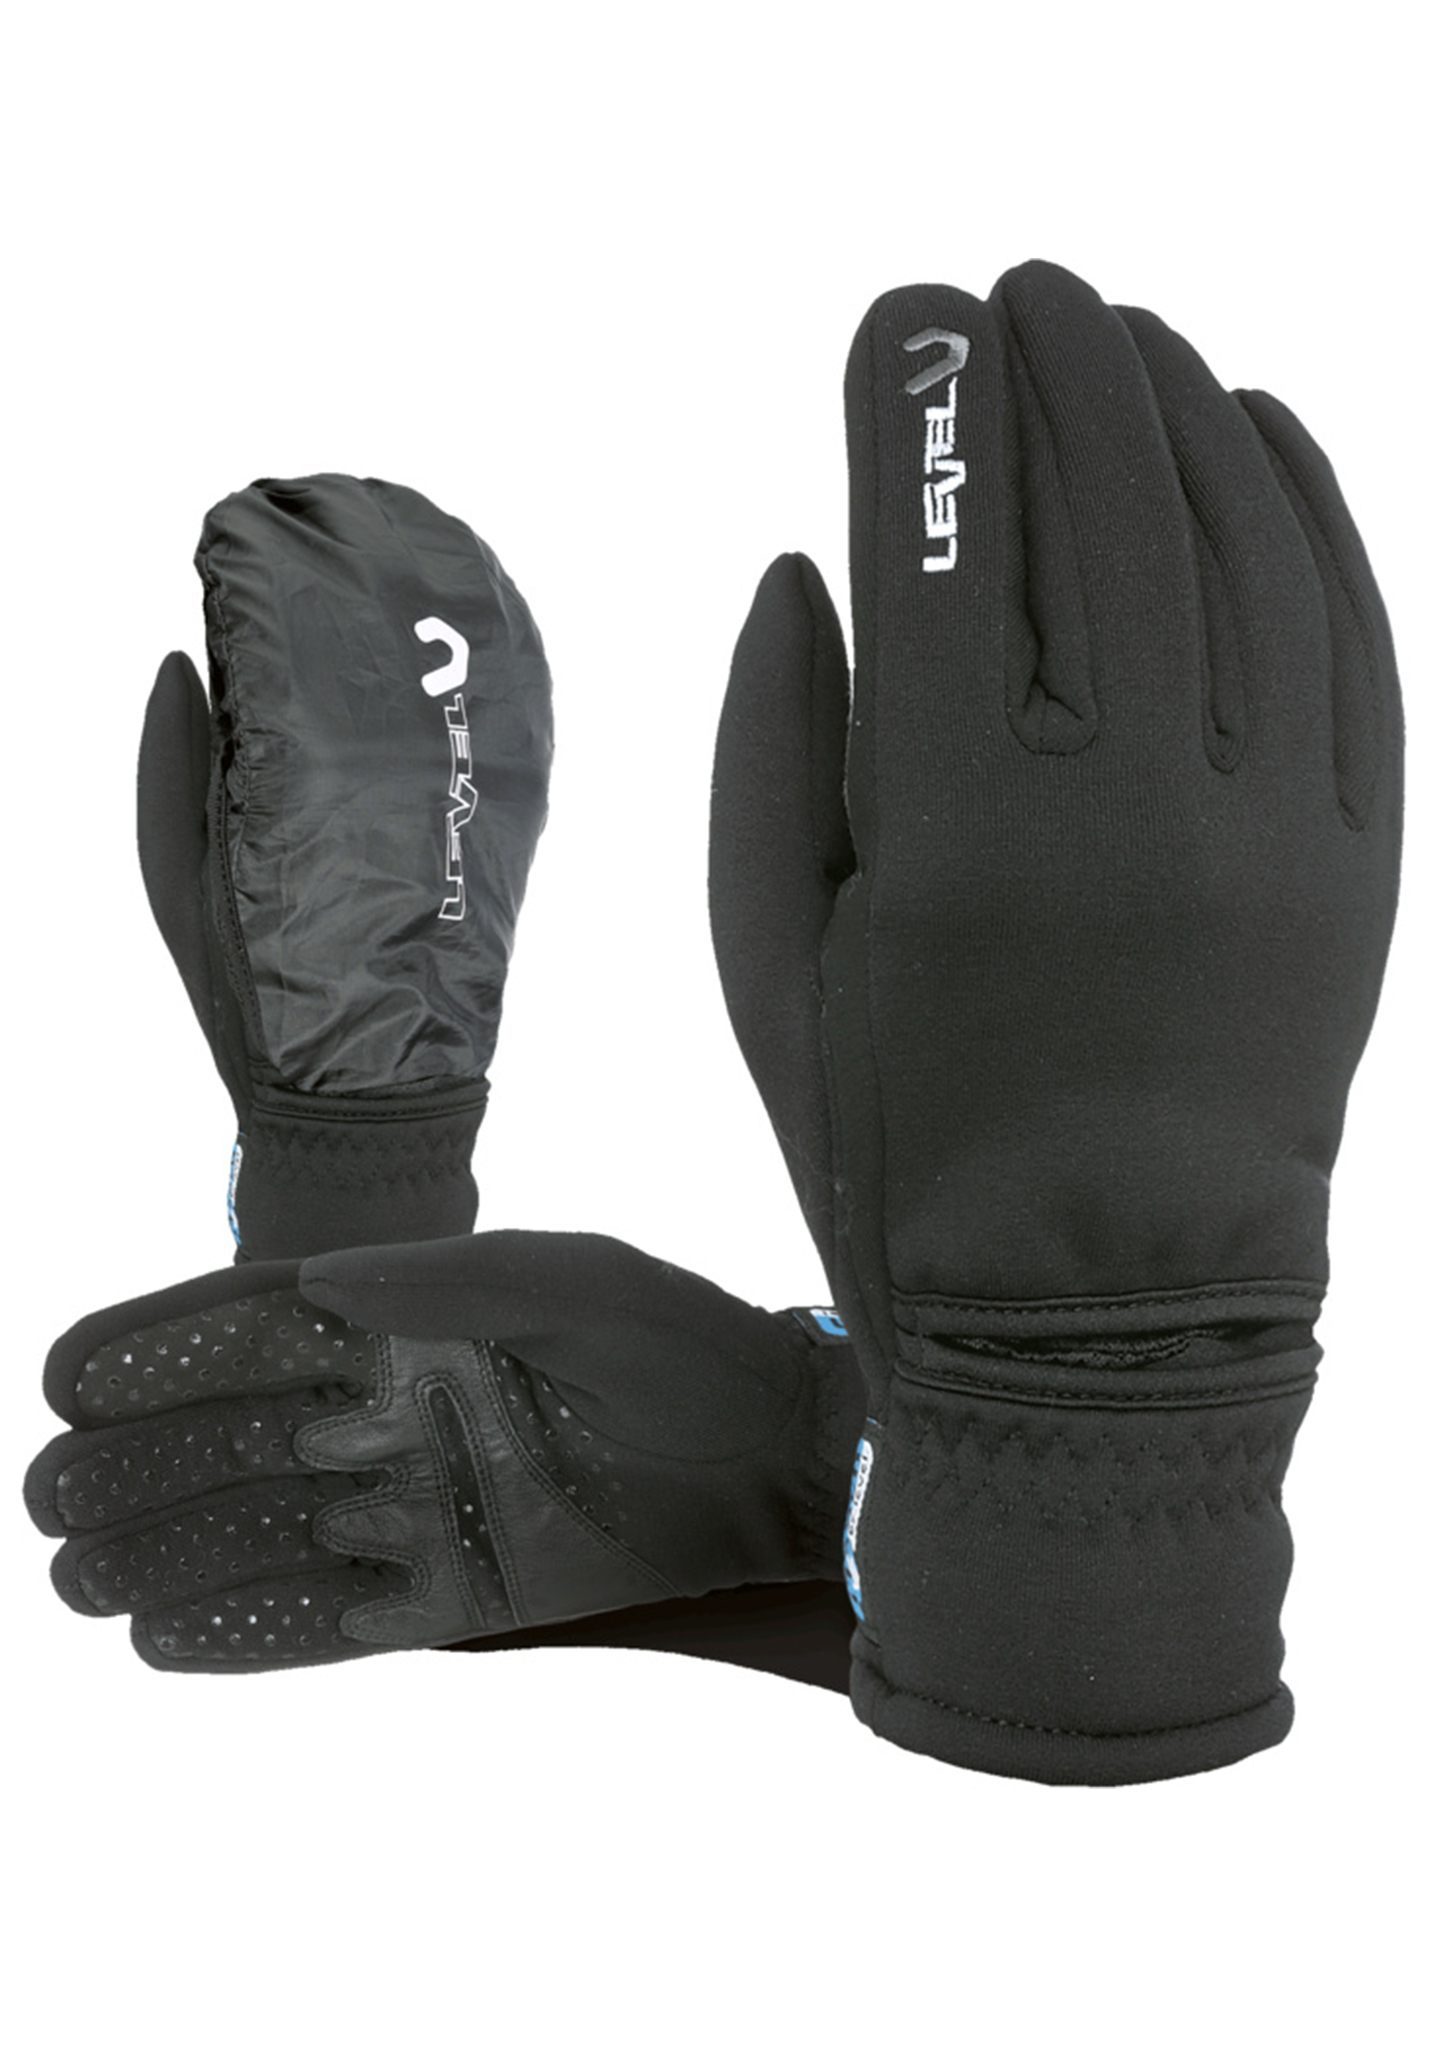 Level Trail Polartec I-Touch Snowboard Handschuhe schwarz / grau XXL